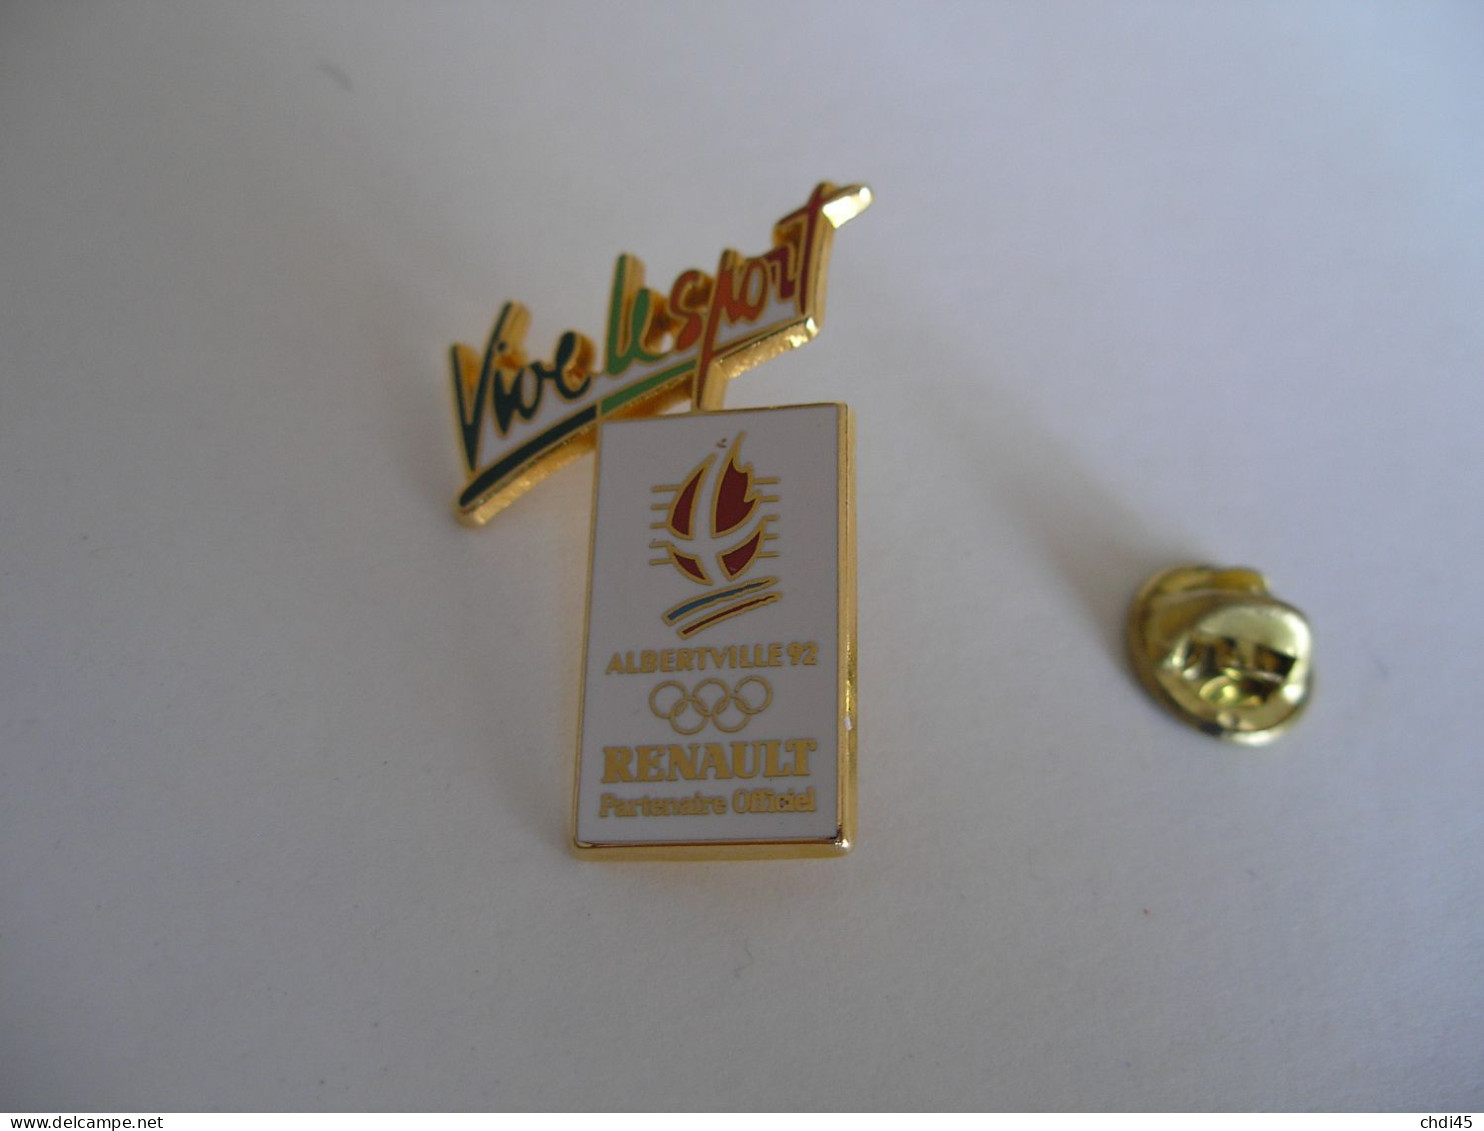 RENAULT Partenaire Officiel VIVE LE SPORT JO ALBERTVILLE 92 - Olympic Games